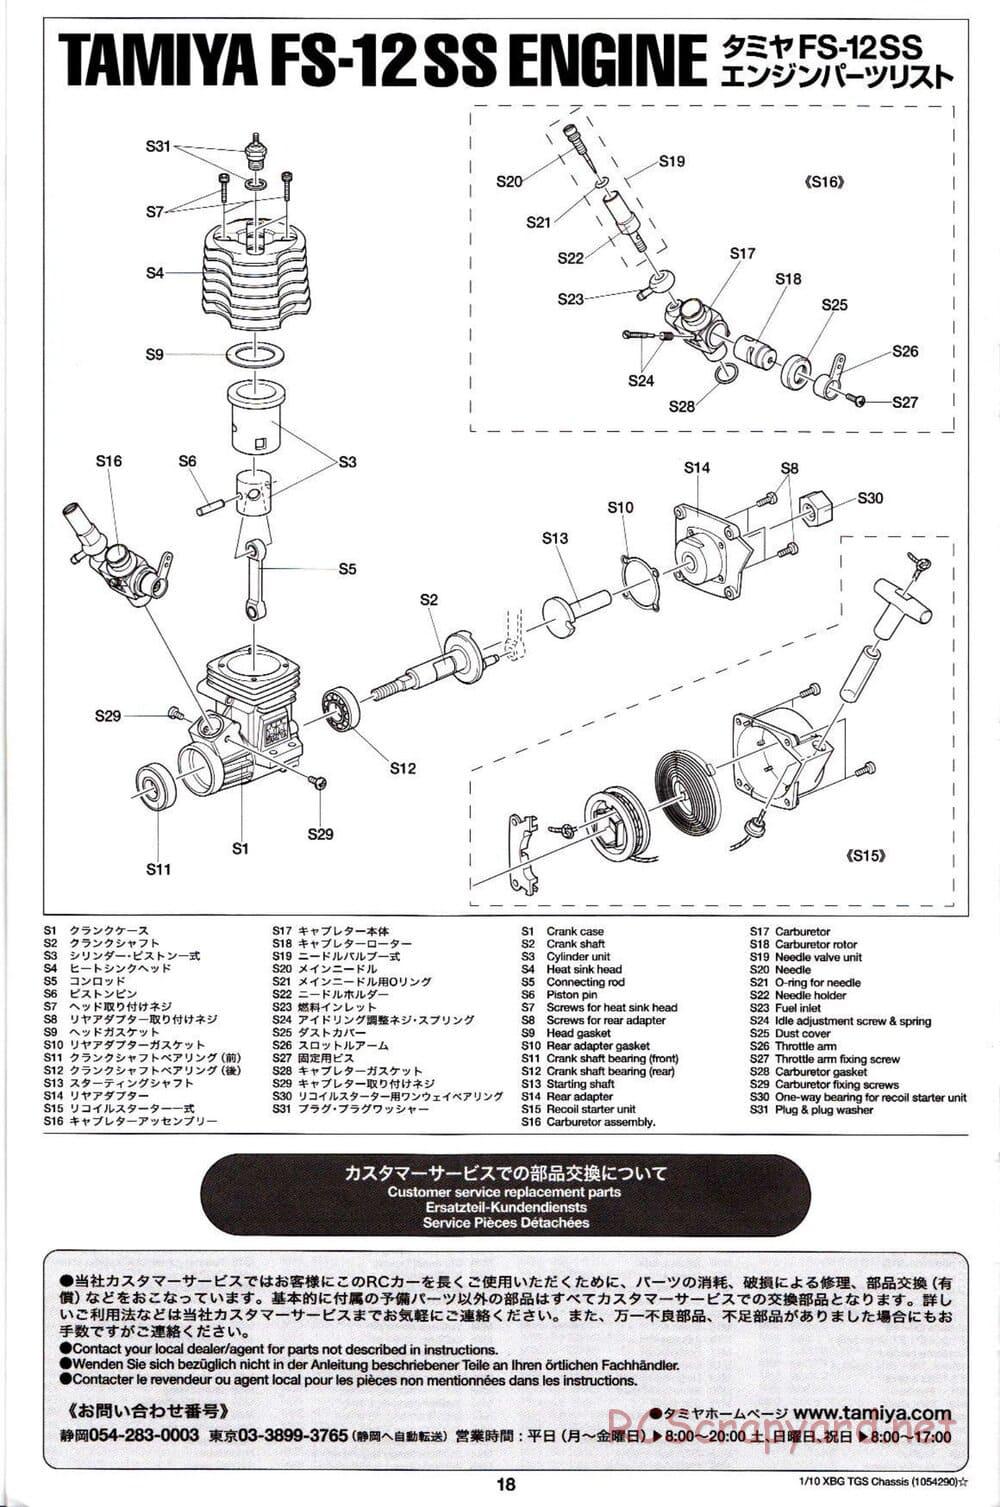 Tamiya - TGS Chassis - Manual - Page 18